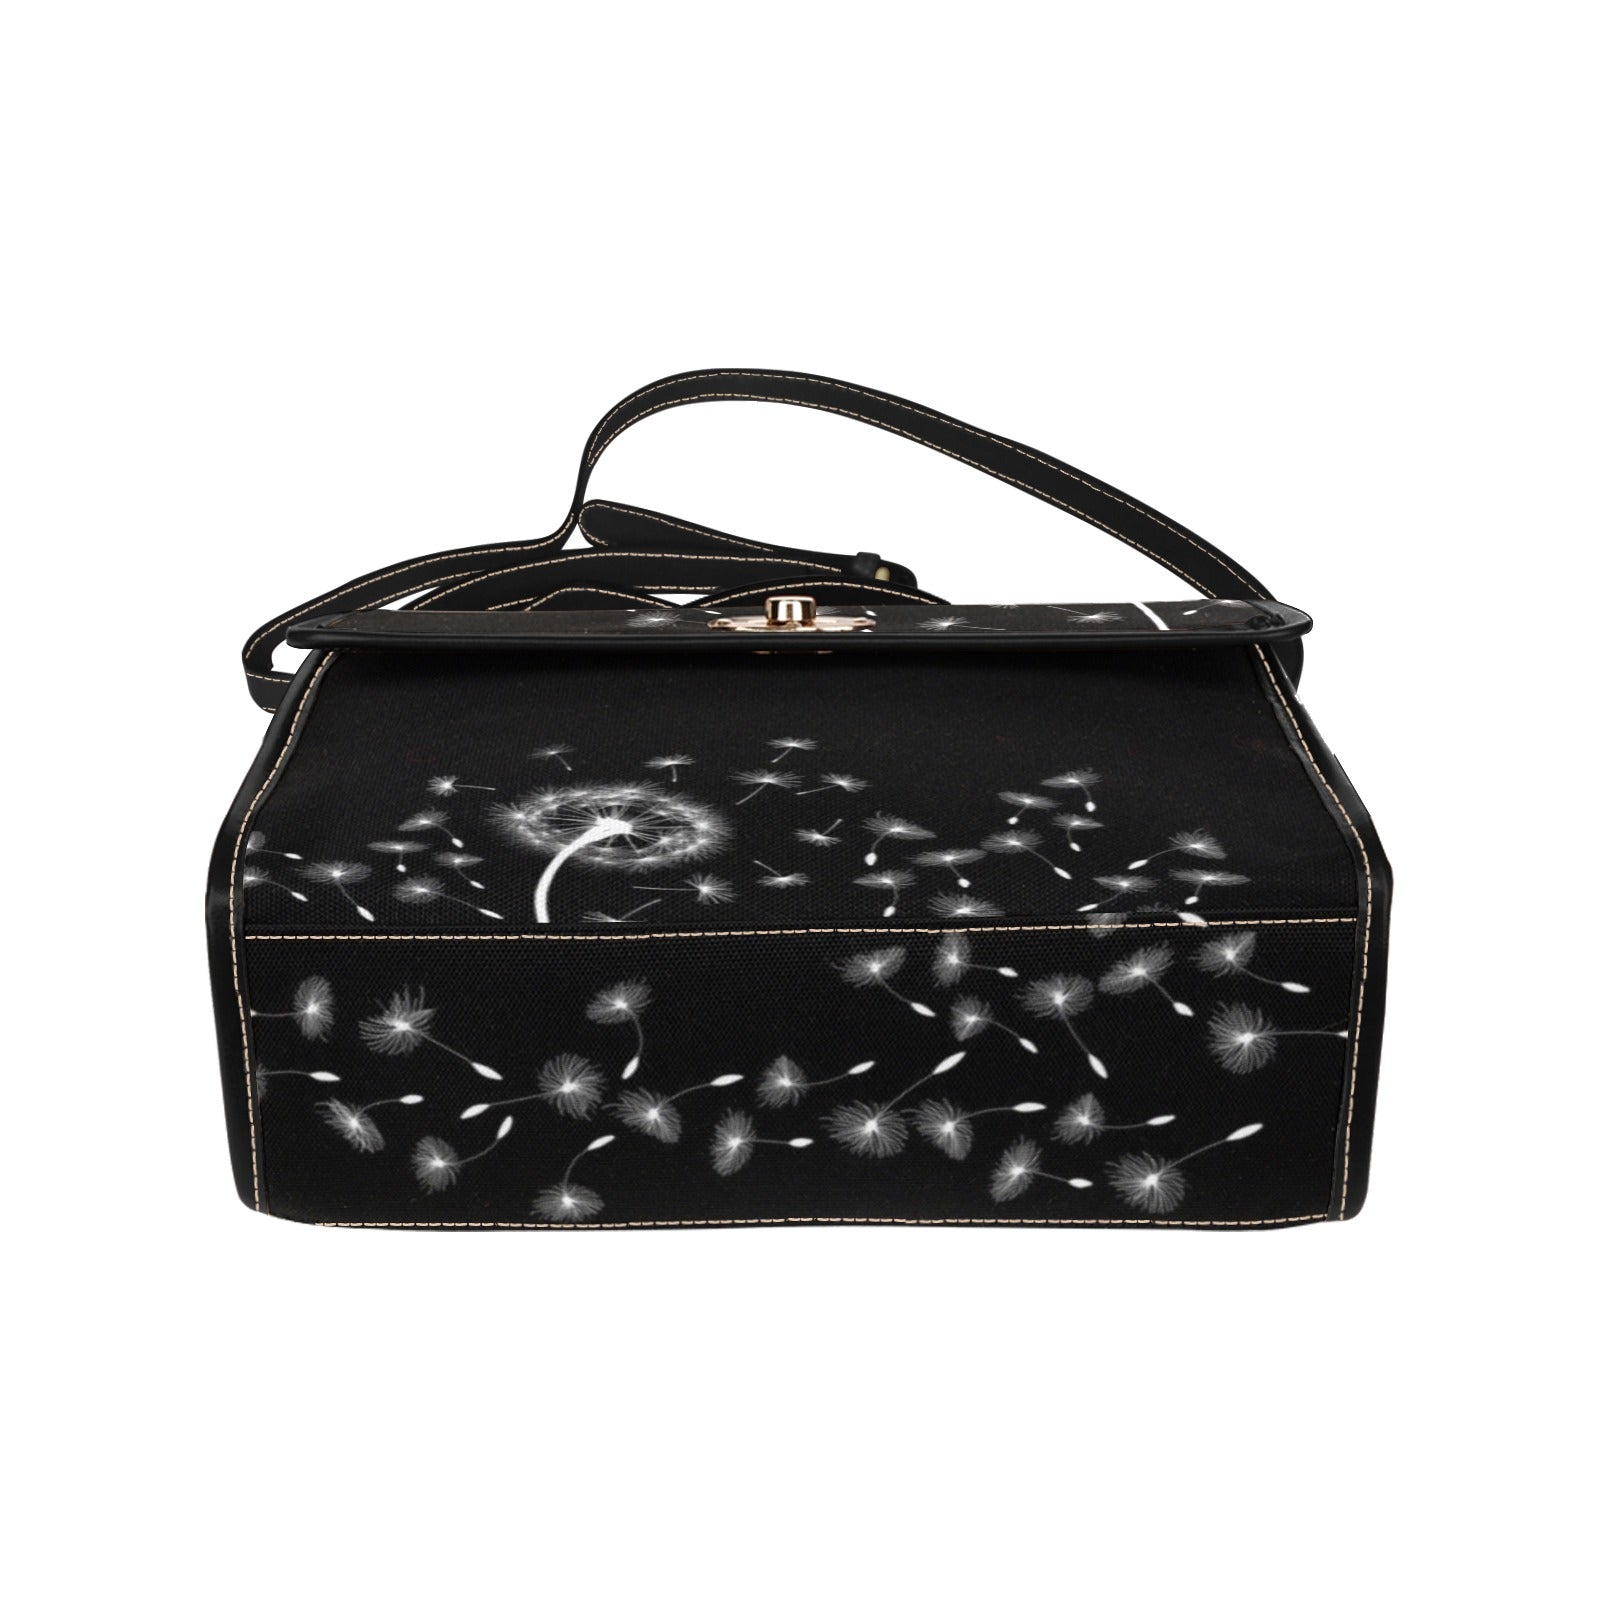 Dandelion - Waterproof Canvas Handbag